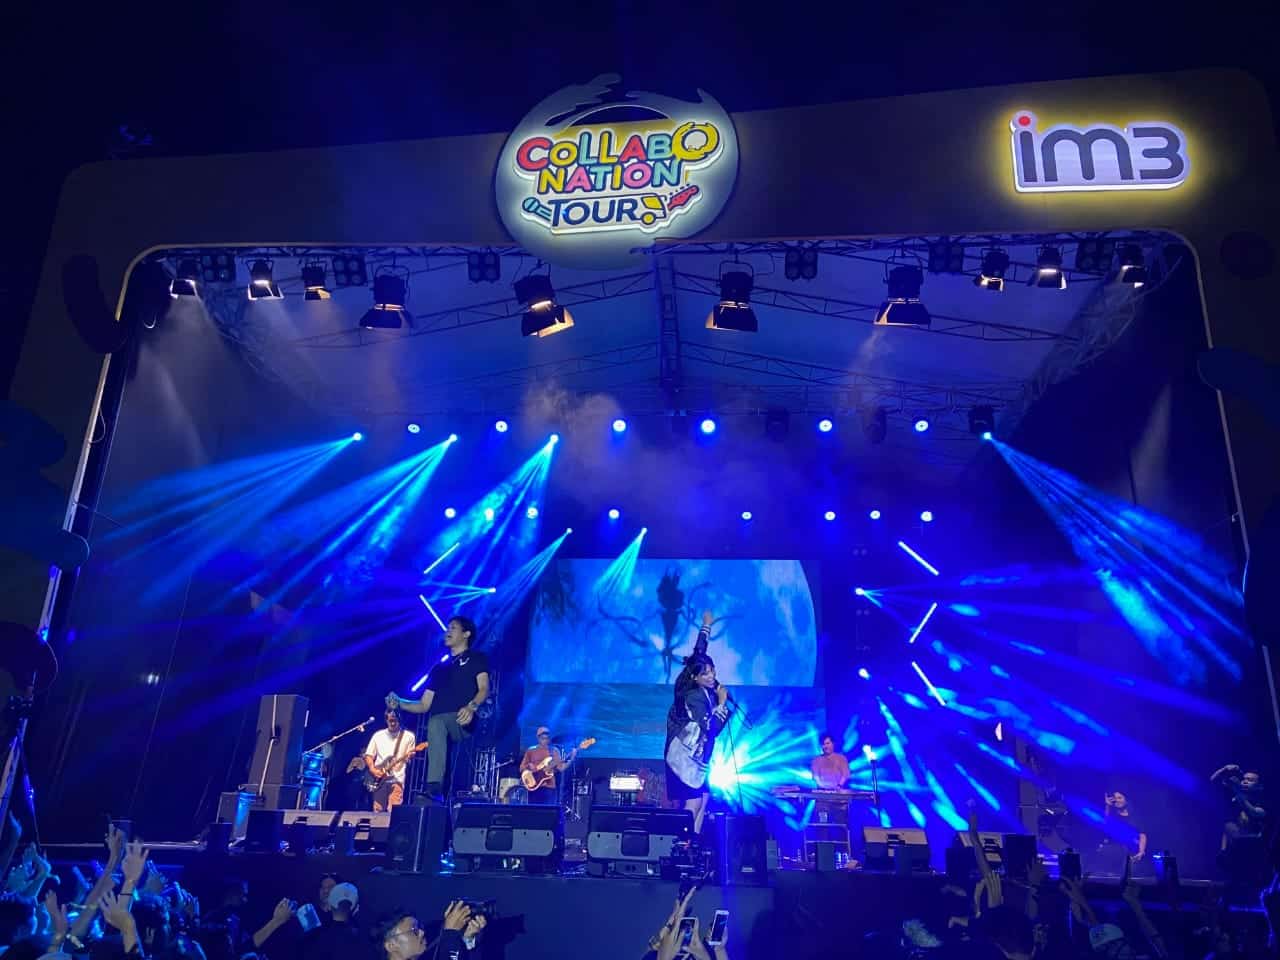 Aksi panggung Hindia Band saat membawakan lagu "Secukupnya" ada konser musik Collabonation Tour Pontianak di Rumah Radakng Pontianak, Rabu (31/08/2022) malam. (Foto: Jauhari/KalbarOnline.com)